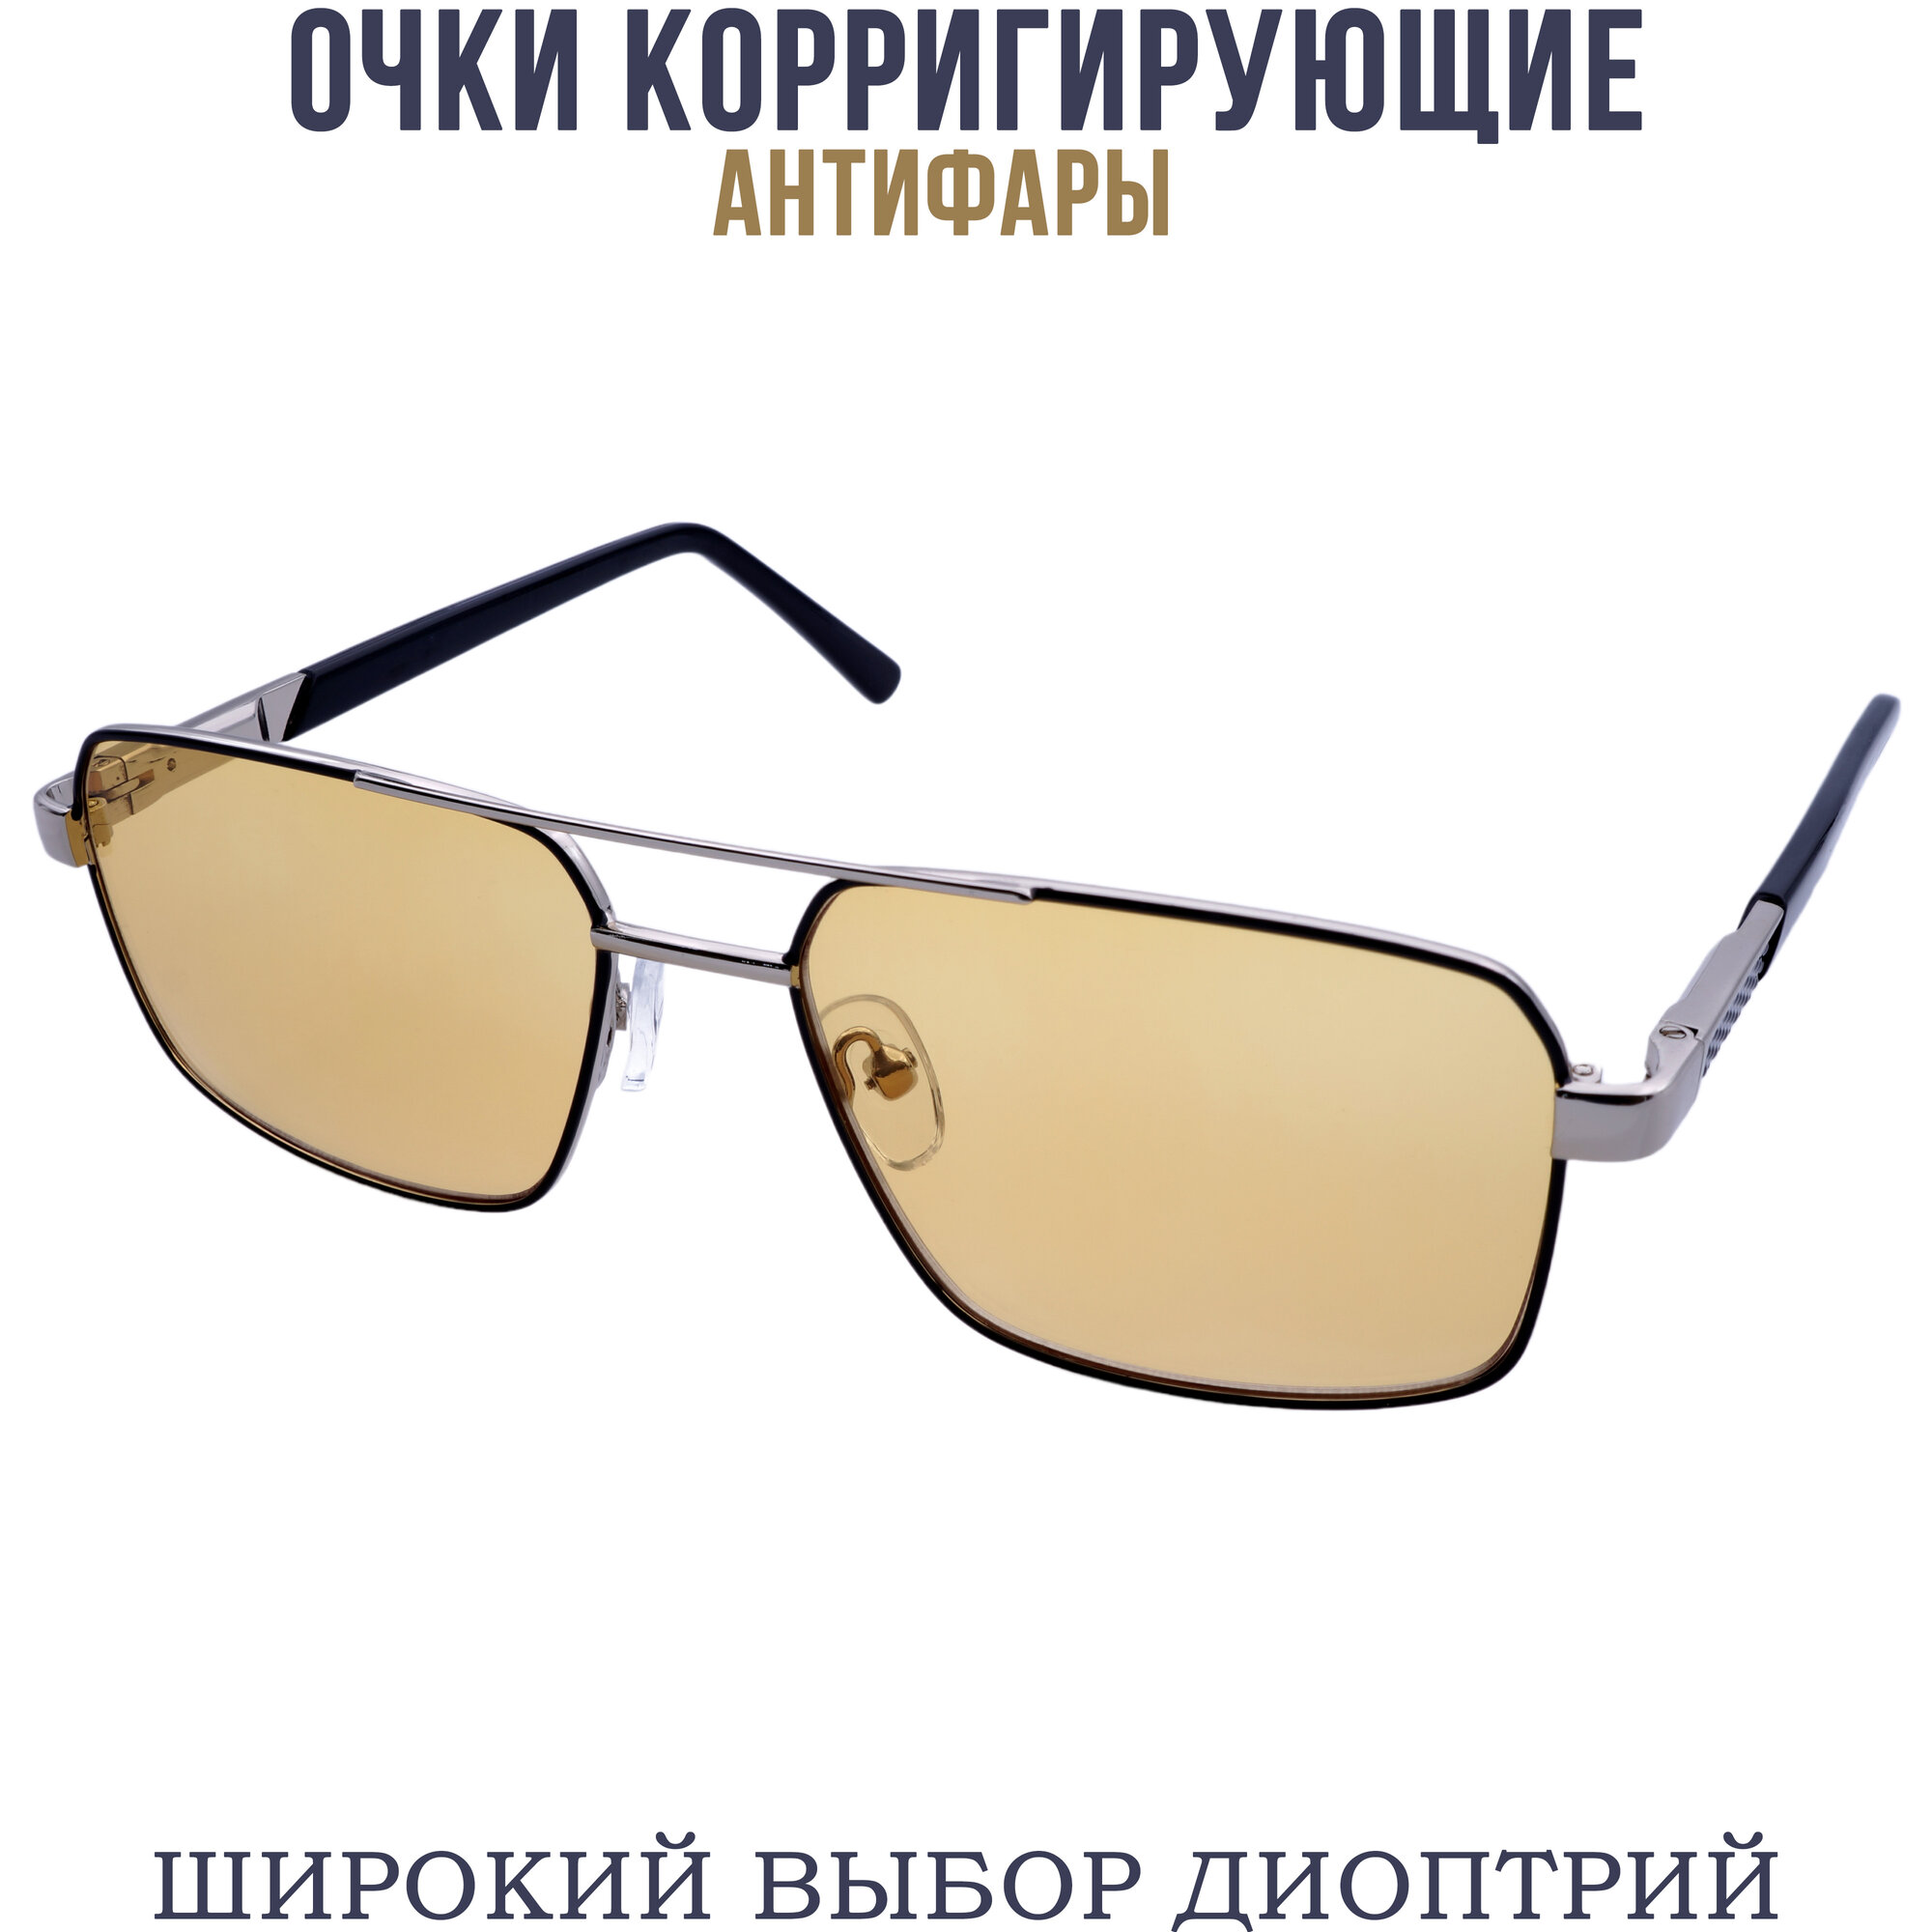 Готовые очки для зрения антифара с диоптриями pd62-64 бронзово-черный +2.00